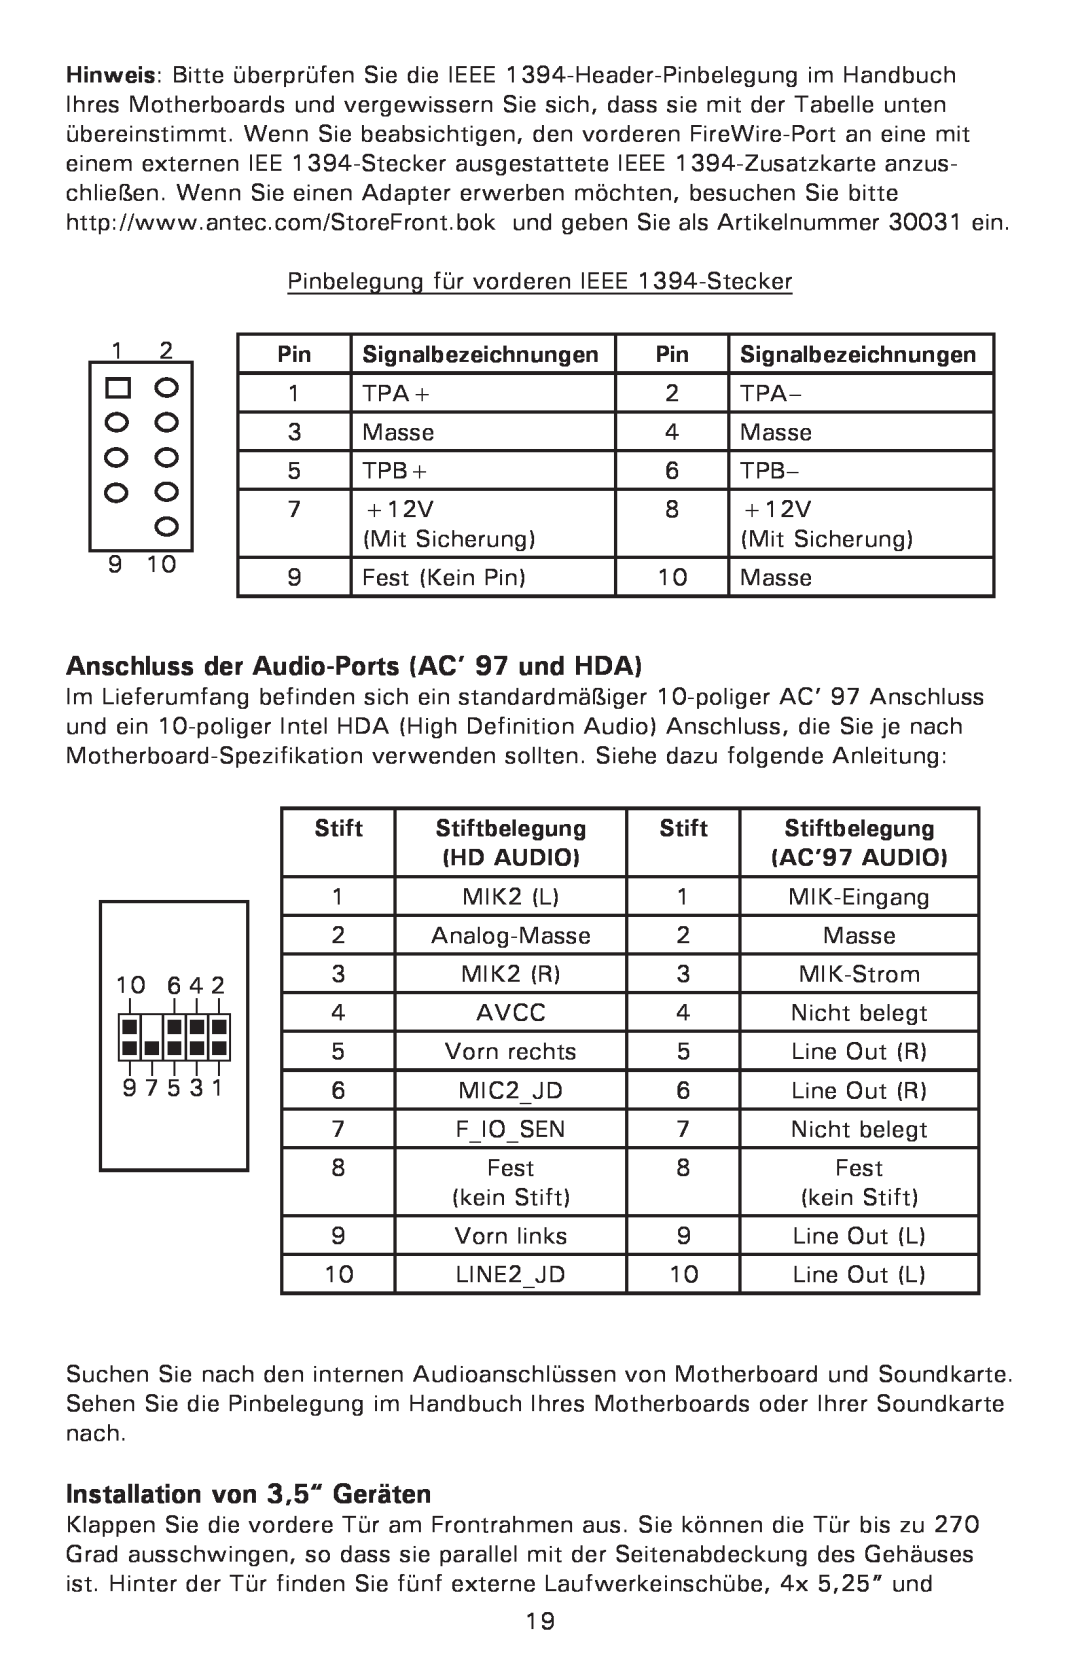 Antec P182SE Anschluss der Audio-Ports AC’ 97 und HDA, Installation von 3,5“ Geräten, Signalbezeichnungen, Stift, Hd Audio 